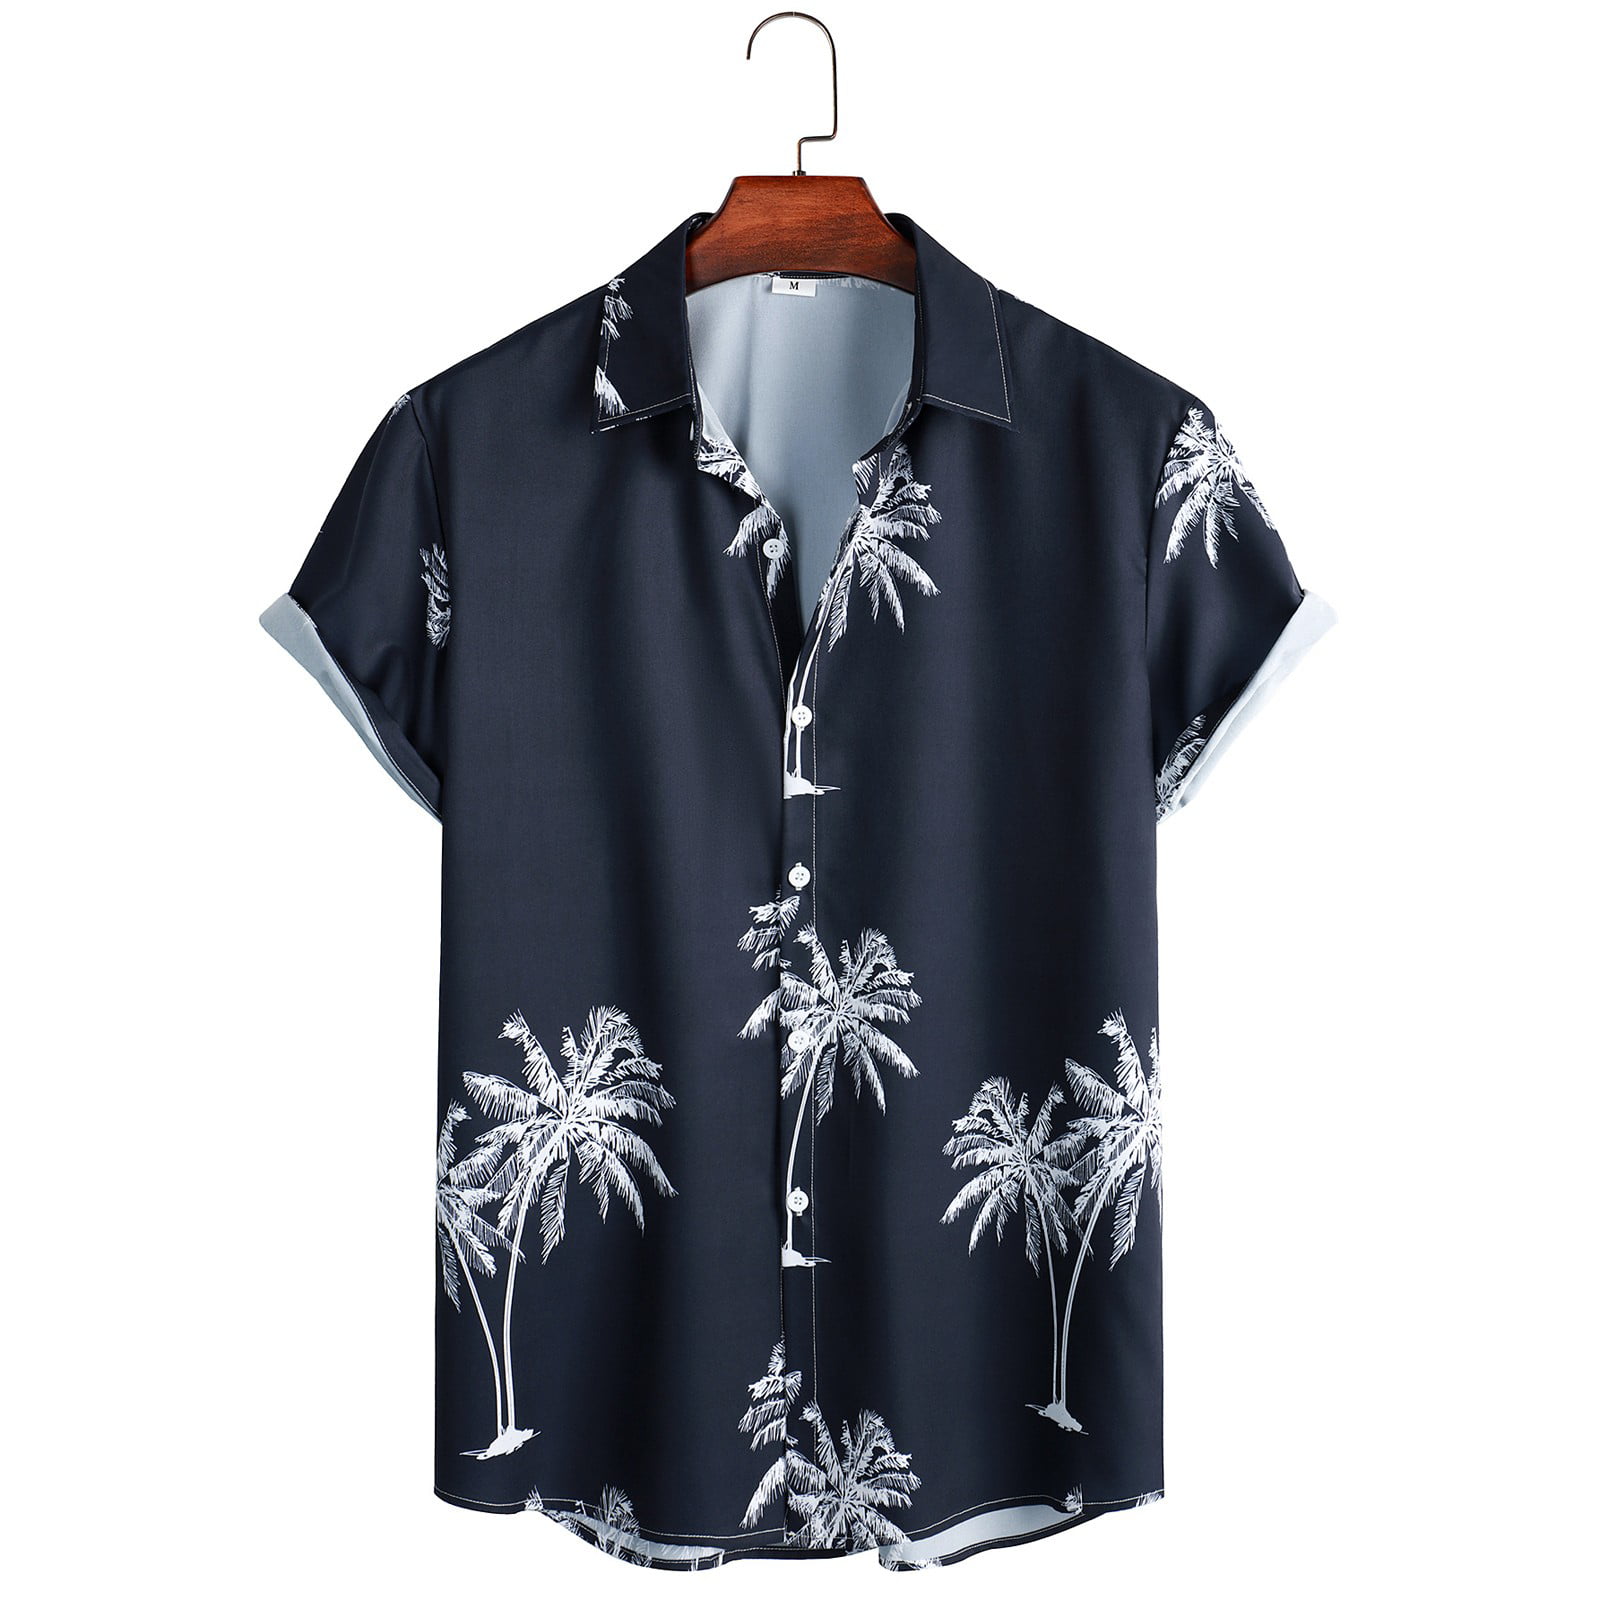  Las mejores camisas de marca para hombres Slim Fit Camisetas  masculinas Verano Hawaii Tops Camisa Floral Print Top Shirt Short, 5-verde  : Ropa, Zapatos y Joyería